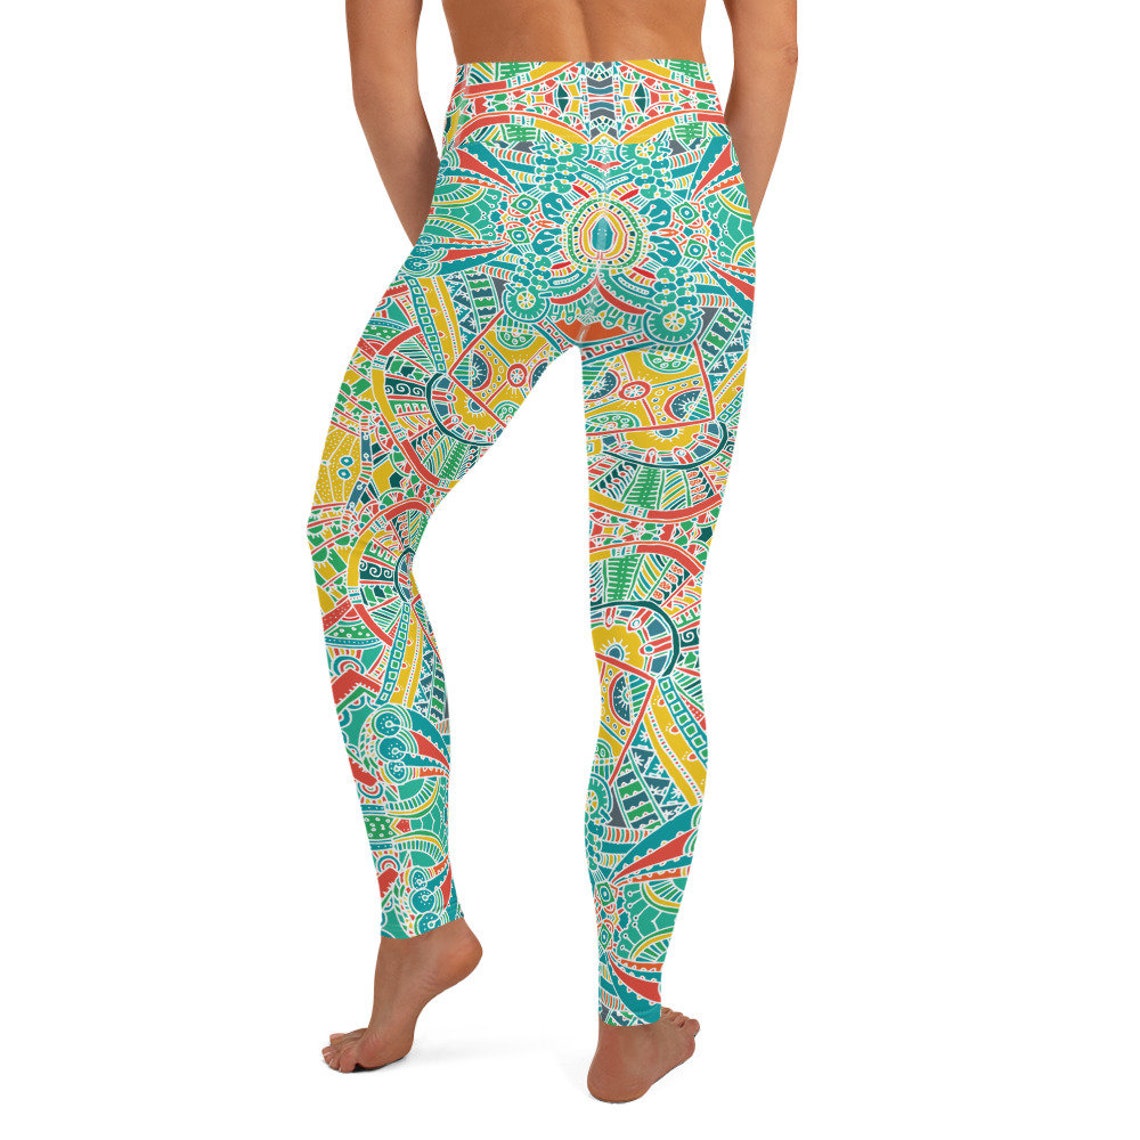 Turquoise Boho Style Geometric Yoga Pants Leggings | Etsy